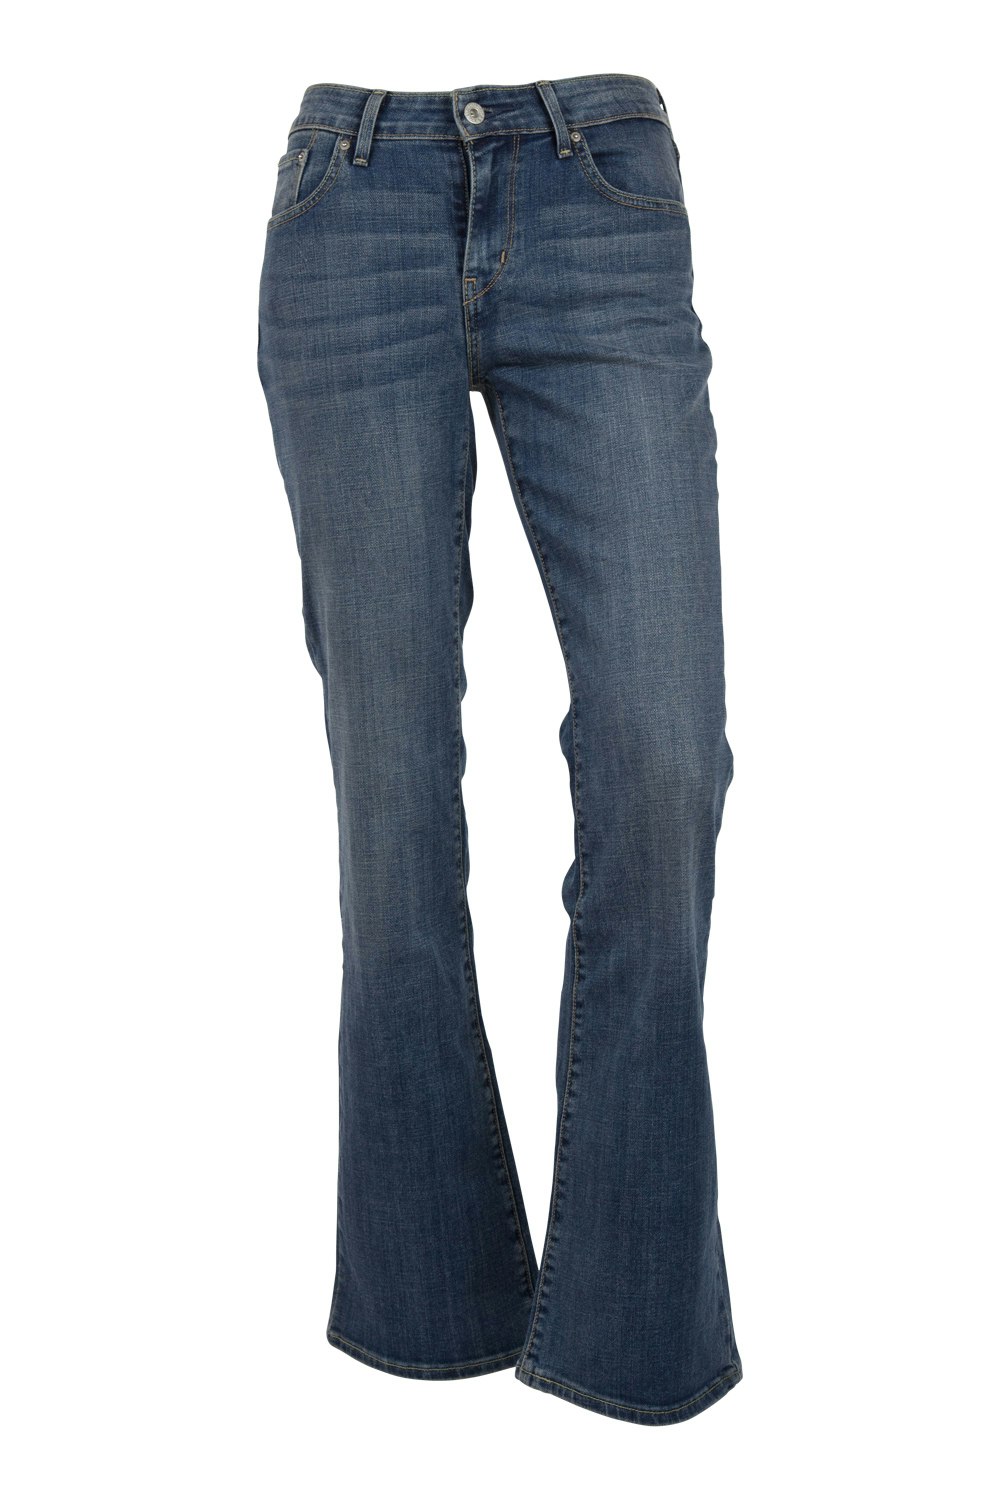 Levis Ladies Jeans Demi Curve Classic Bootcut Jeans - Womens Bootcut ...